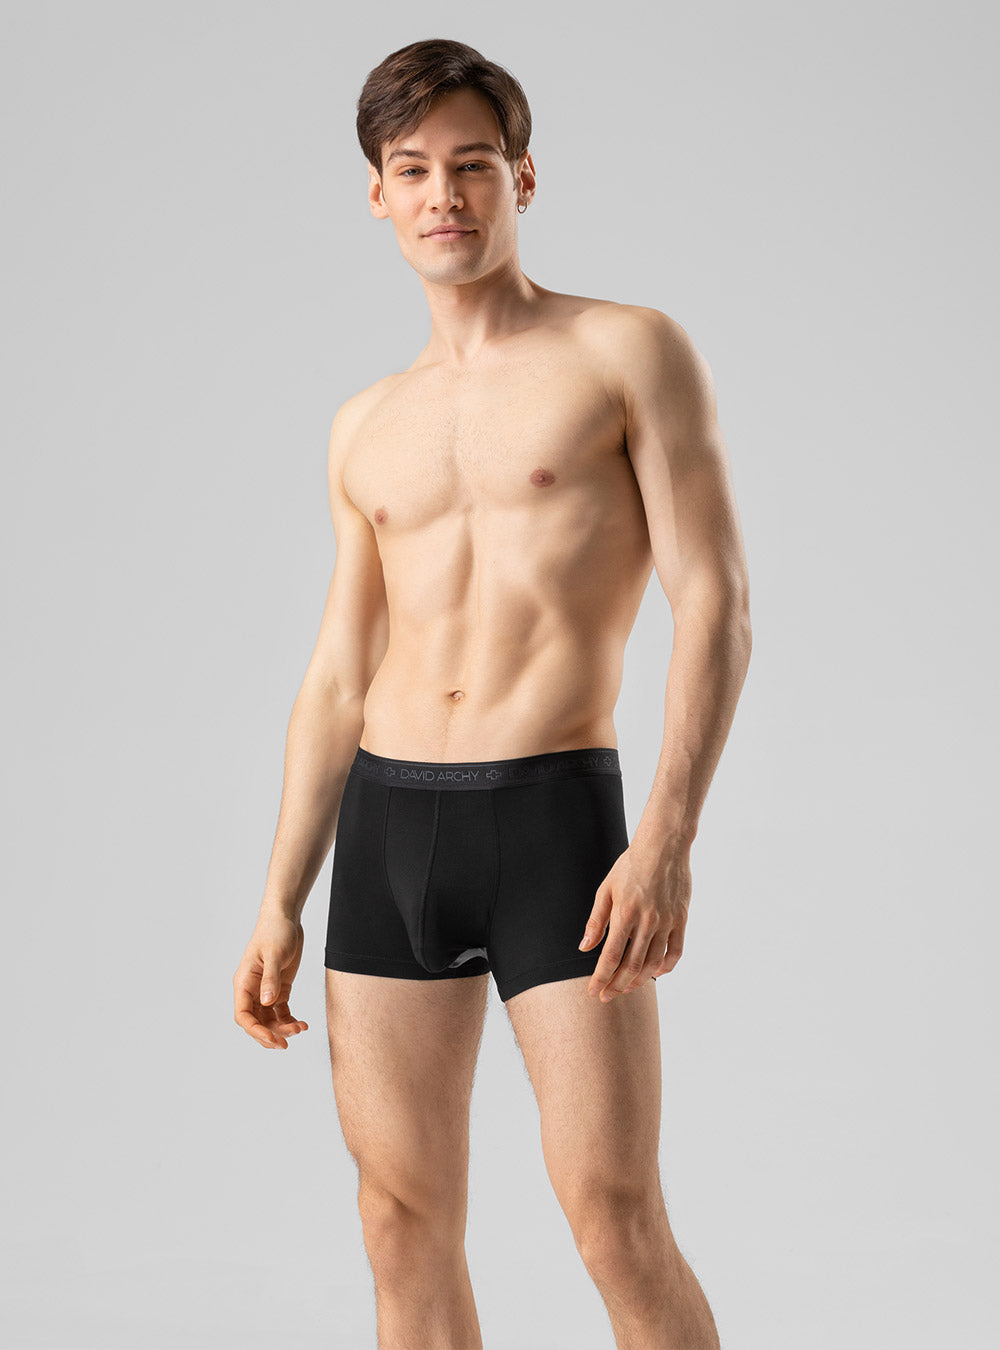 SIORO Men's 4Packs Trunks Underwear Soft Lenzing Micro Modal